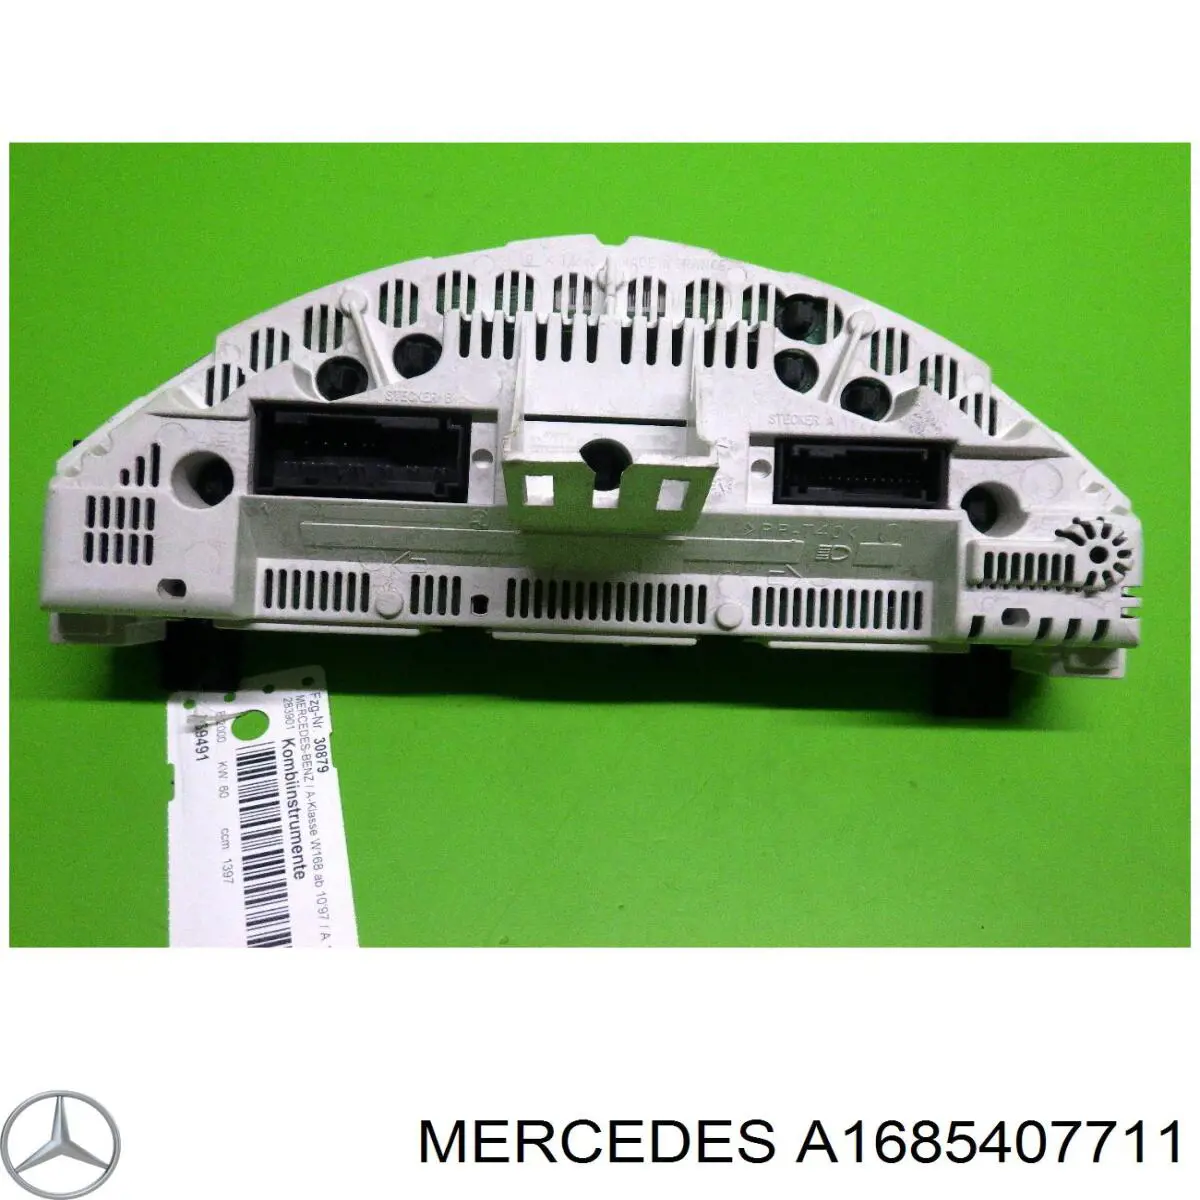 A1685407711 Mercedes painel de instrumentos (quadro de instrumentos)